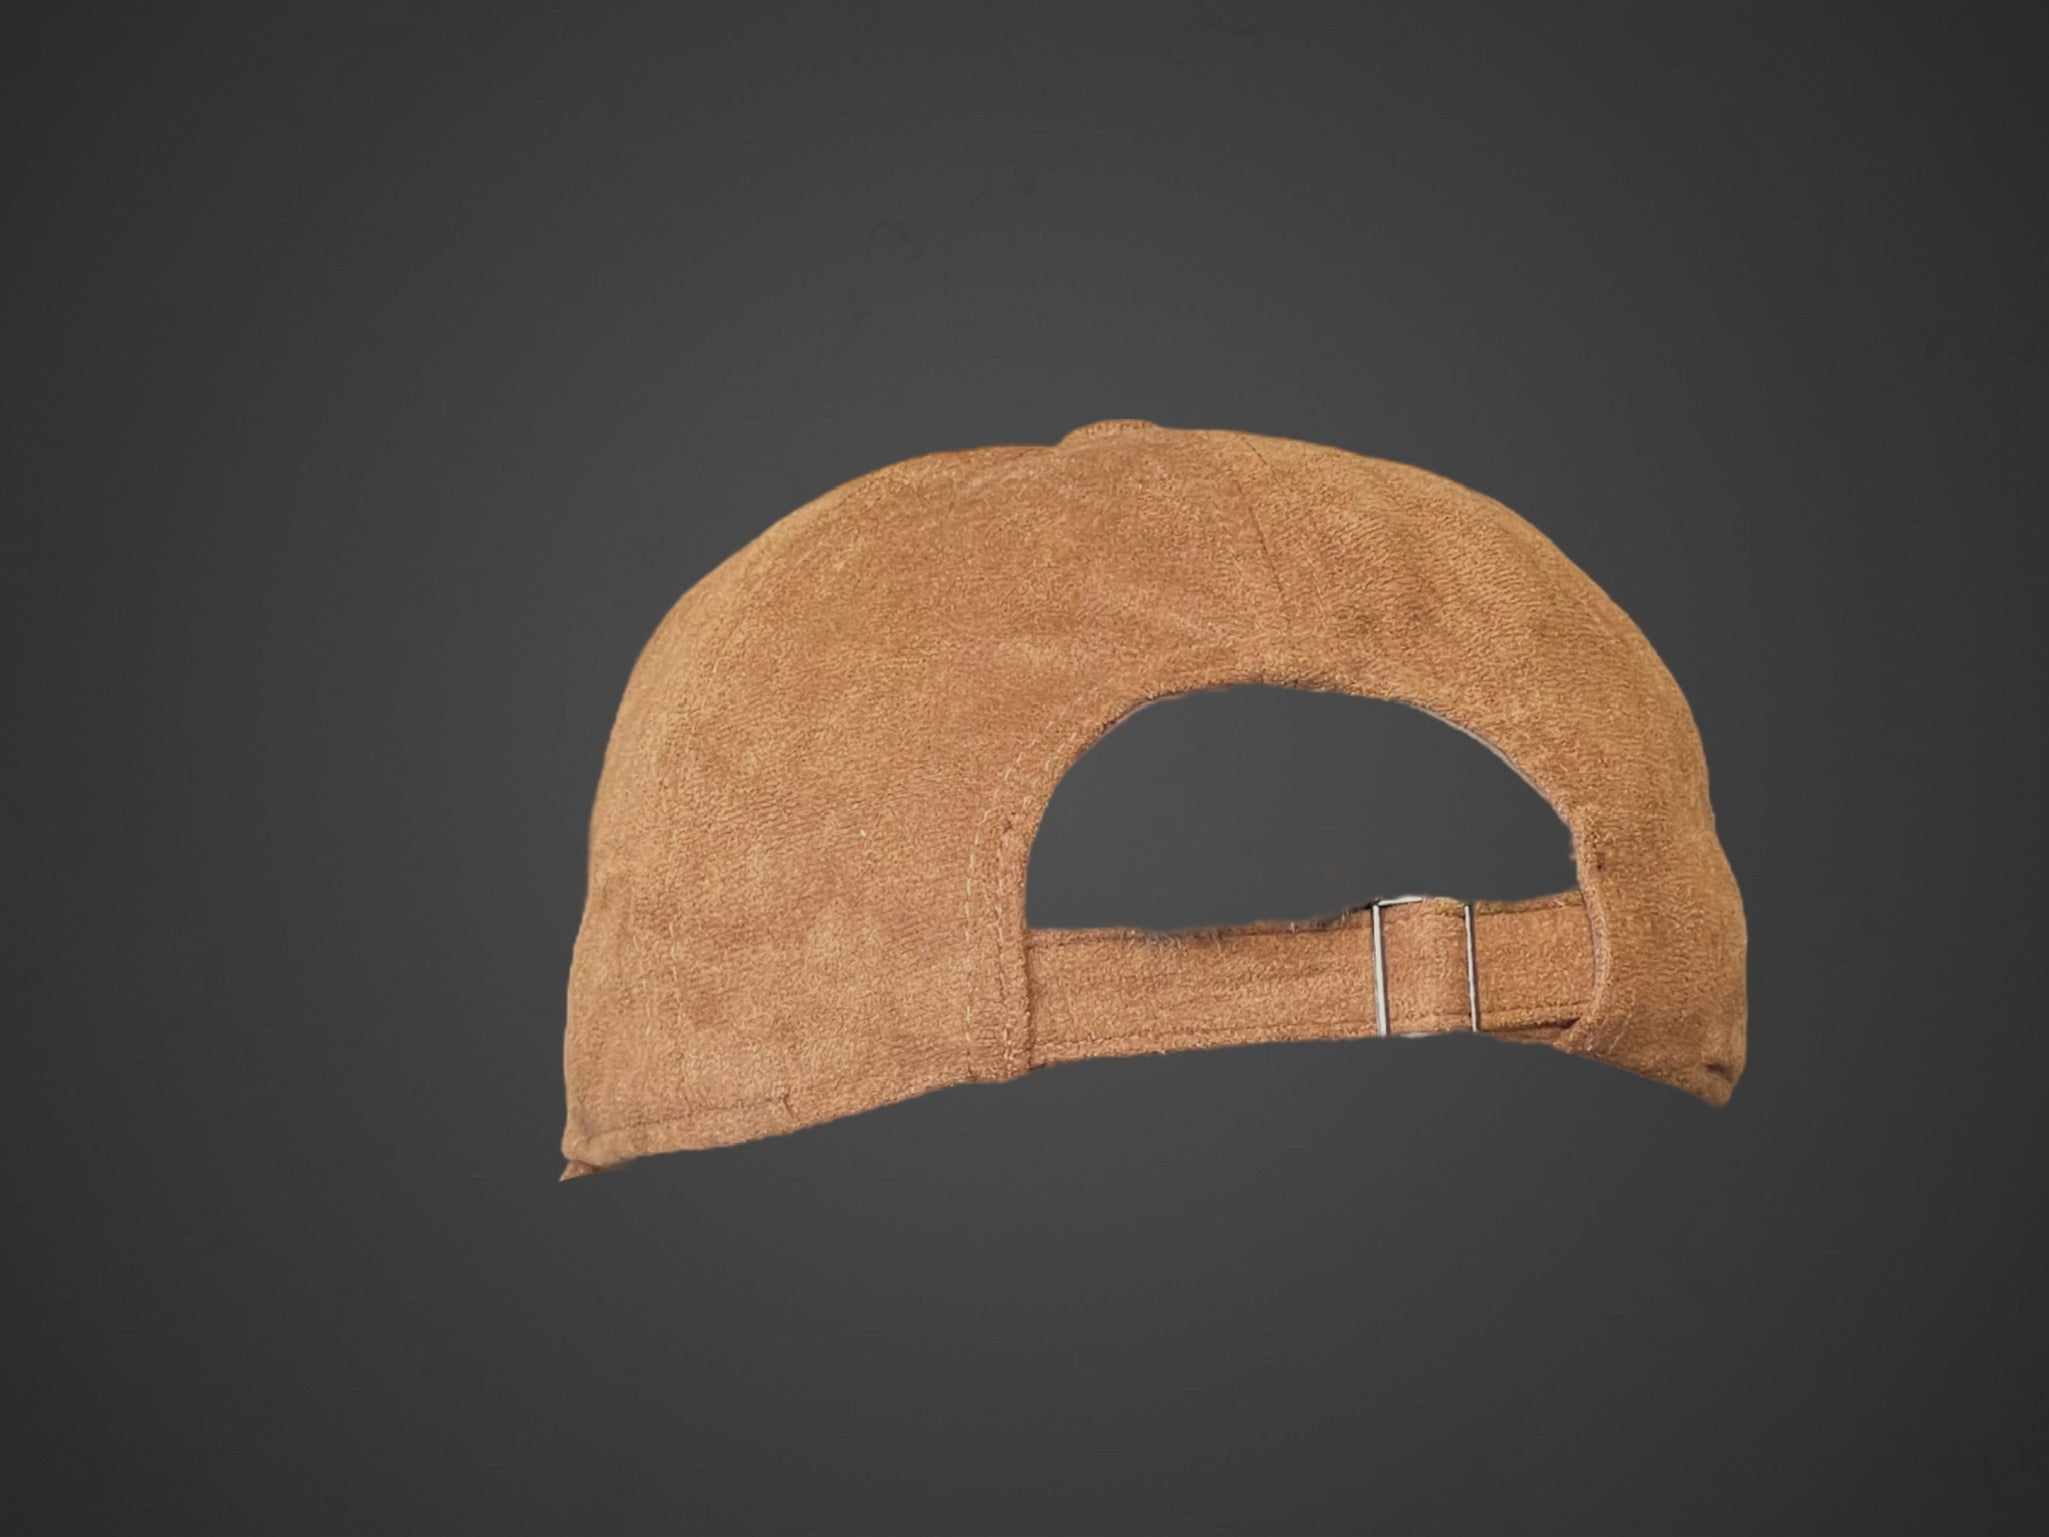 cappello visiera tessuto floccato marrone